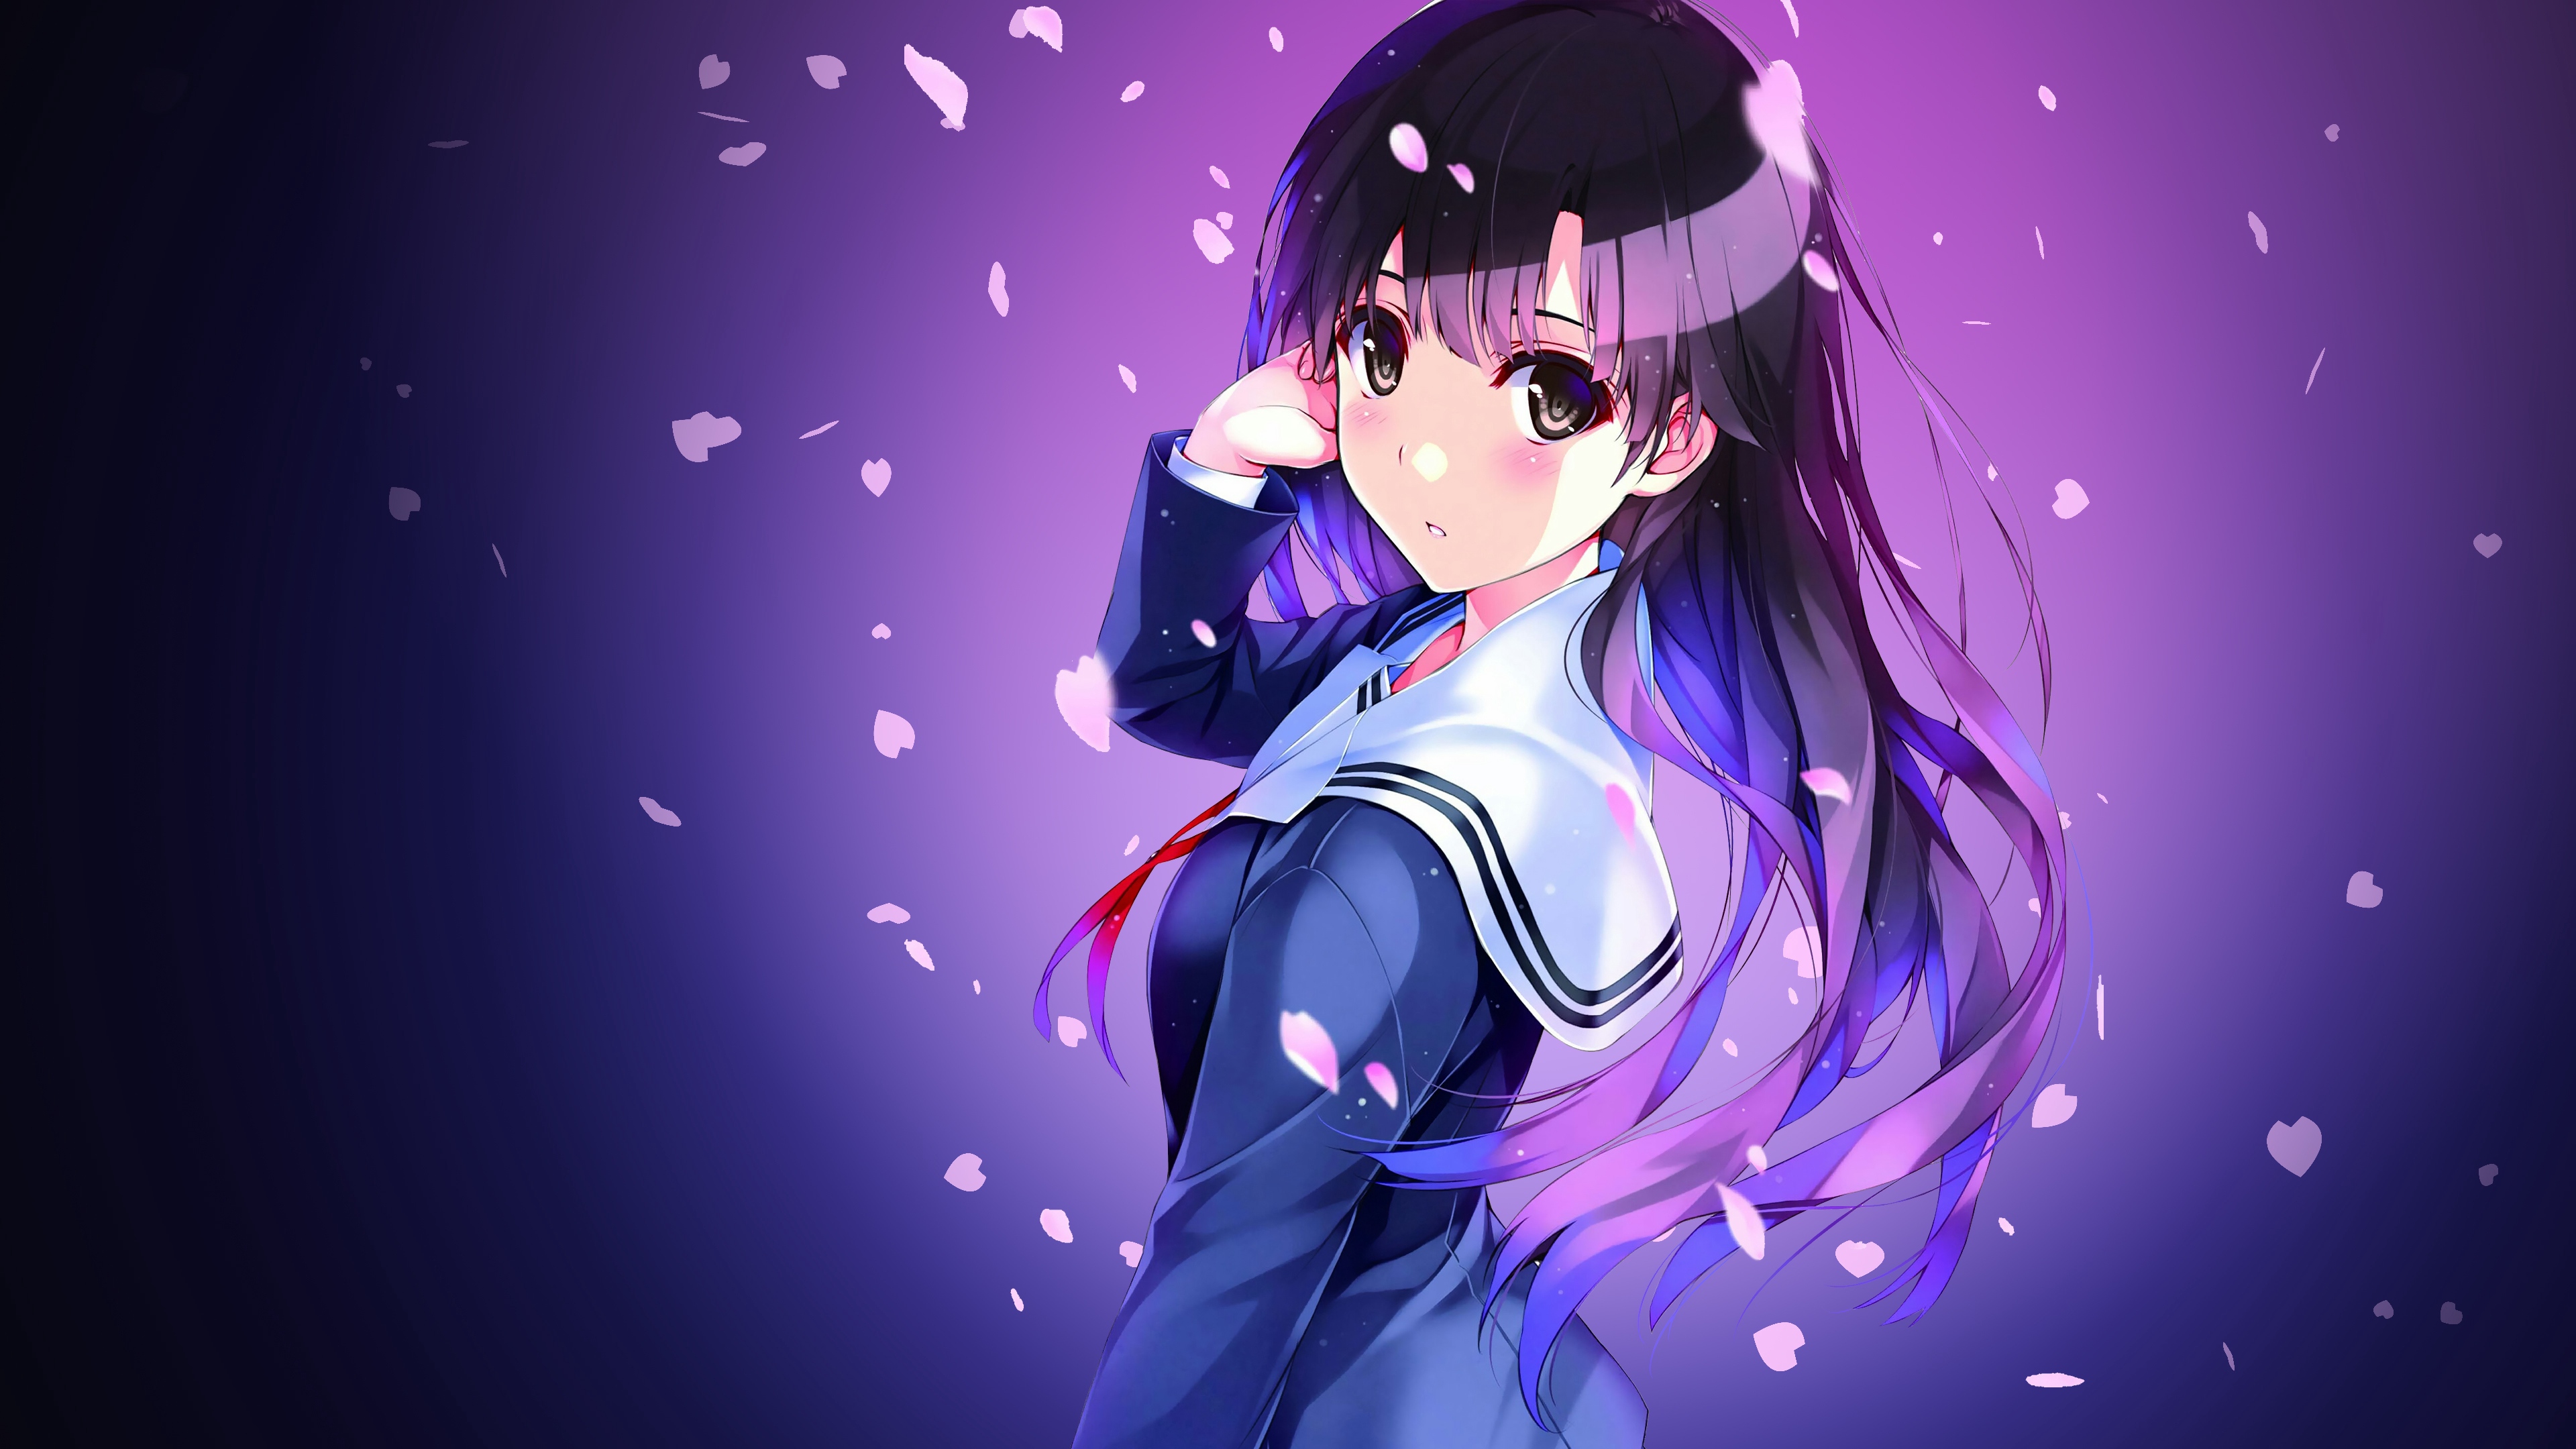 anime schoolgirl uniform girl 4k 1541975687 - anime, schoolgirl, uniform, girl 4k - Uniform, schoolgirl, Anime